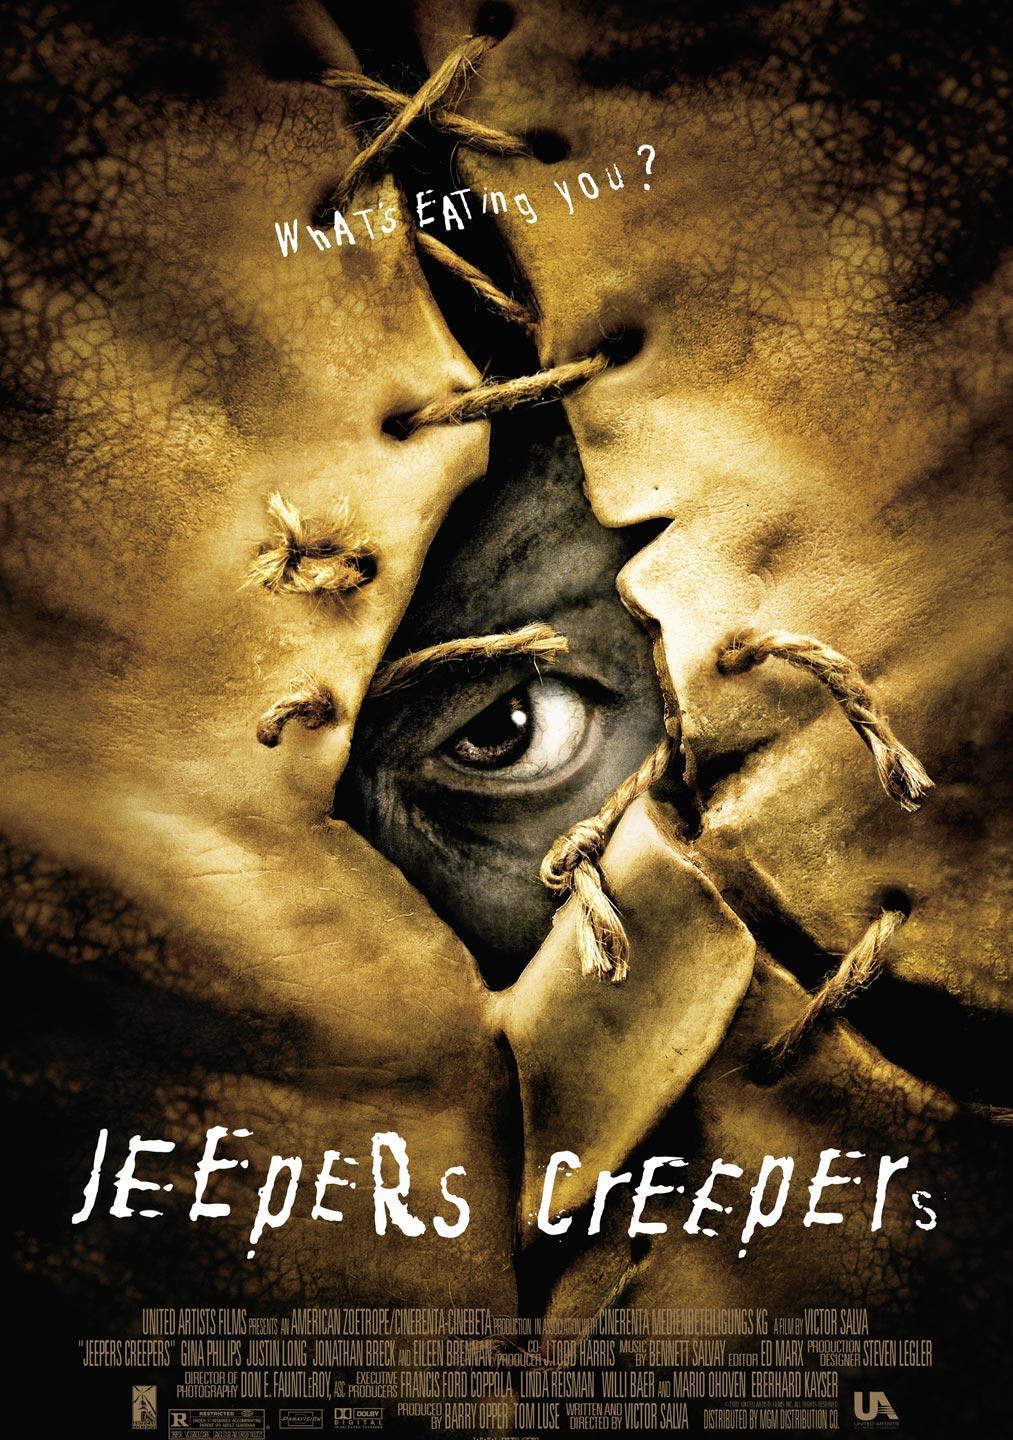 惊心食人族/毛骨悚然/魔鬼尸餐 [1-2集合] [R3字幕/DIY繁简中字] Jeepers Creepers I-II 2001-2003 1080p Blu-ray AVC DTS-HD MA 5.1-XOXO@HDSky[60.34GB]-2.jpg